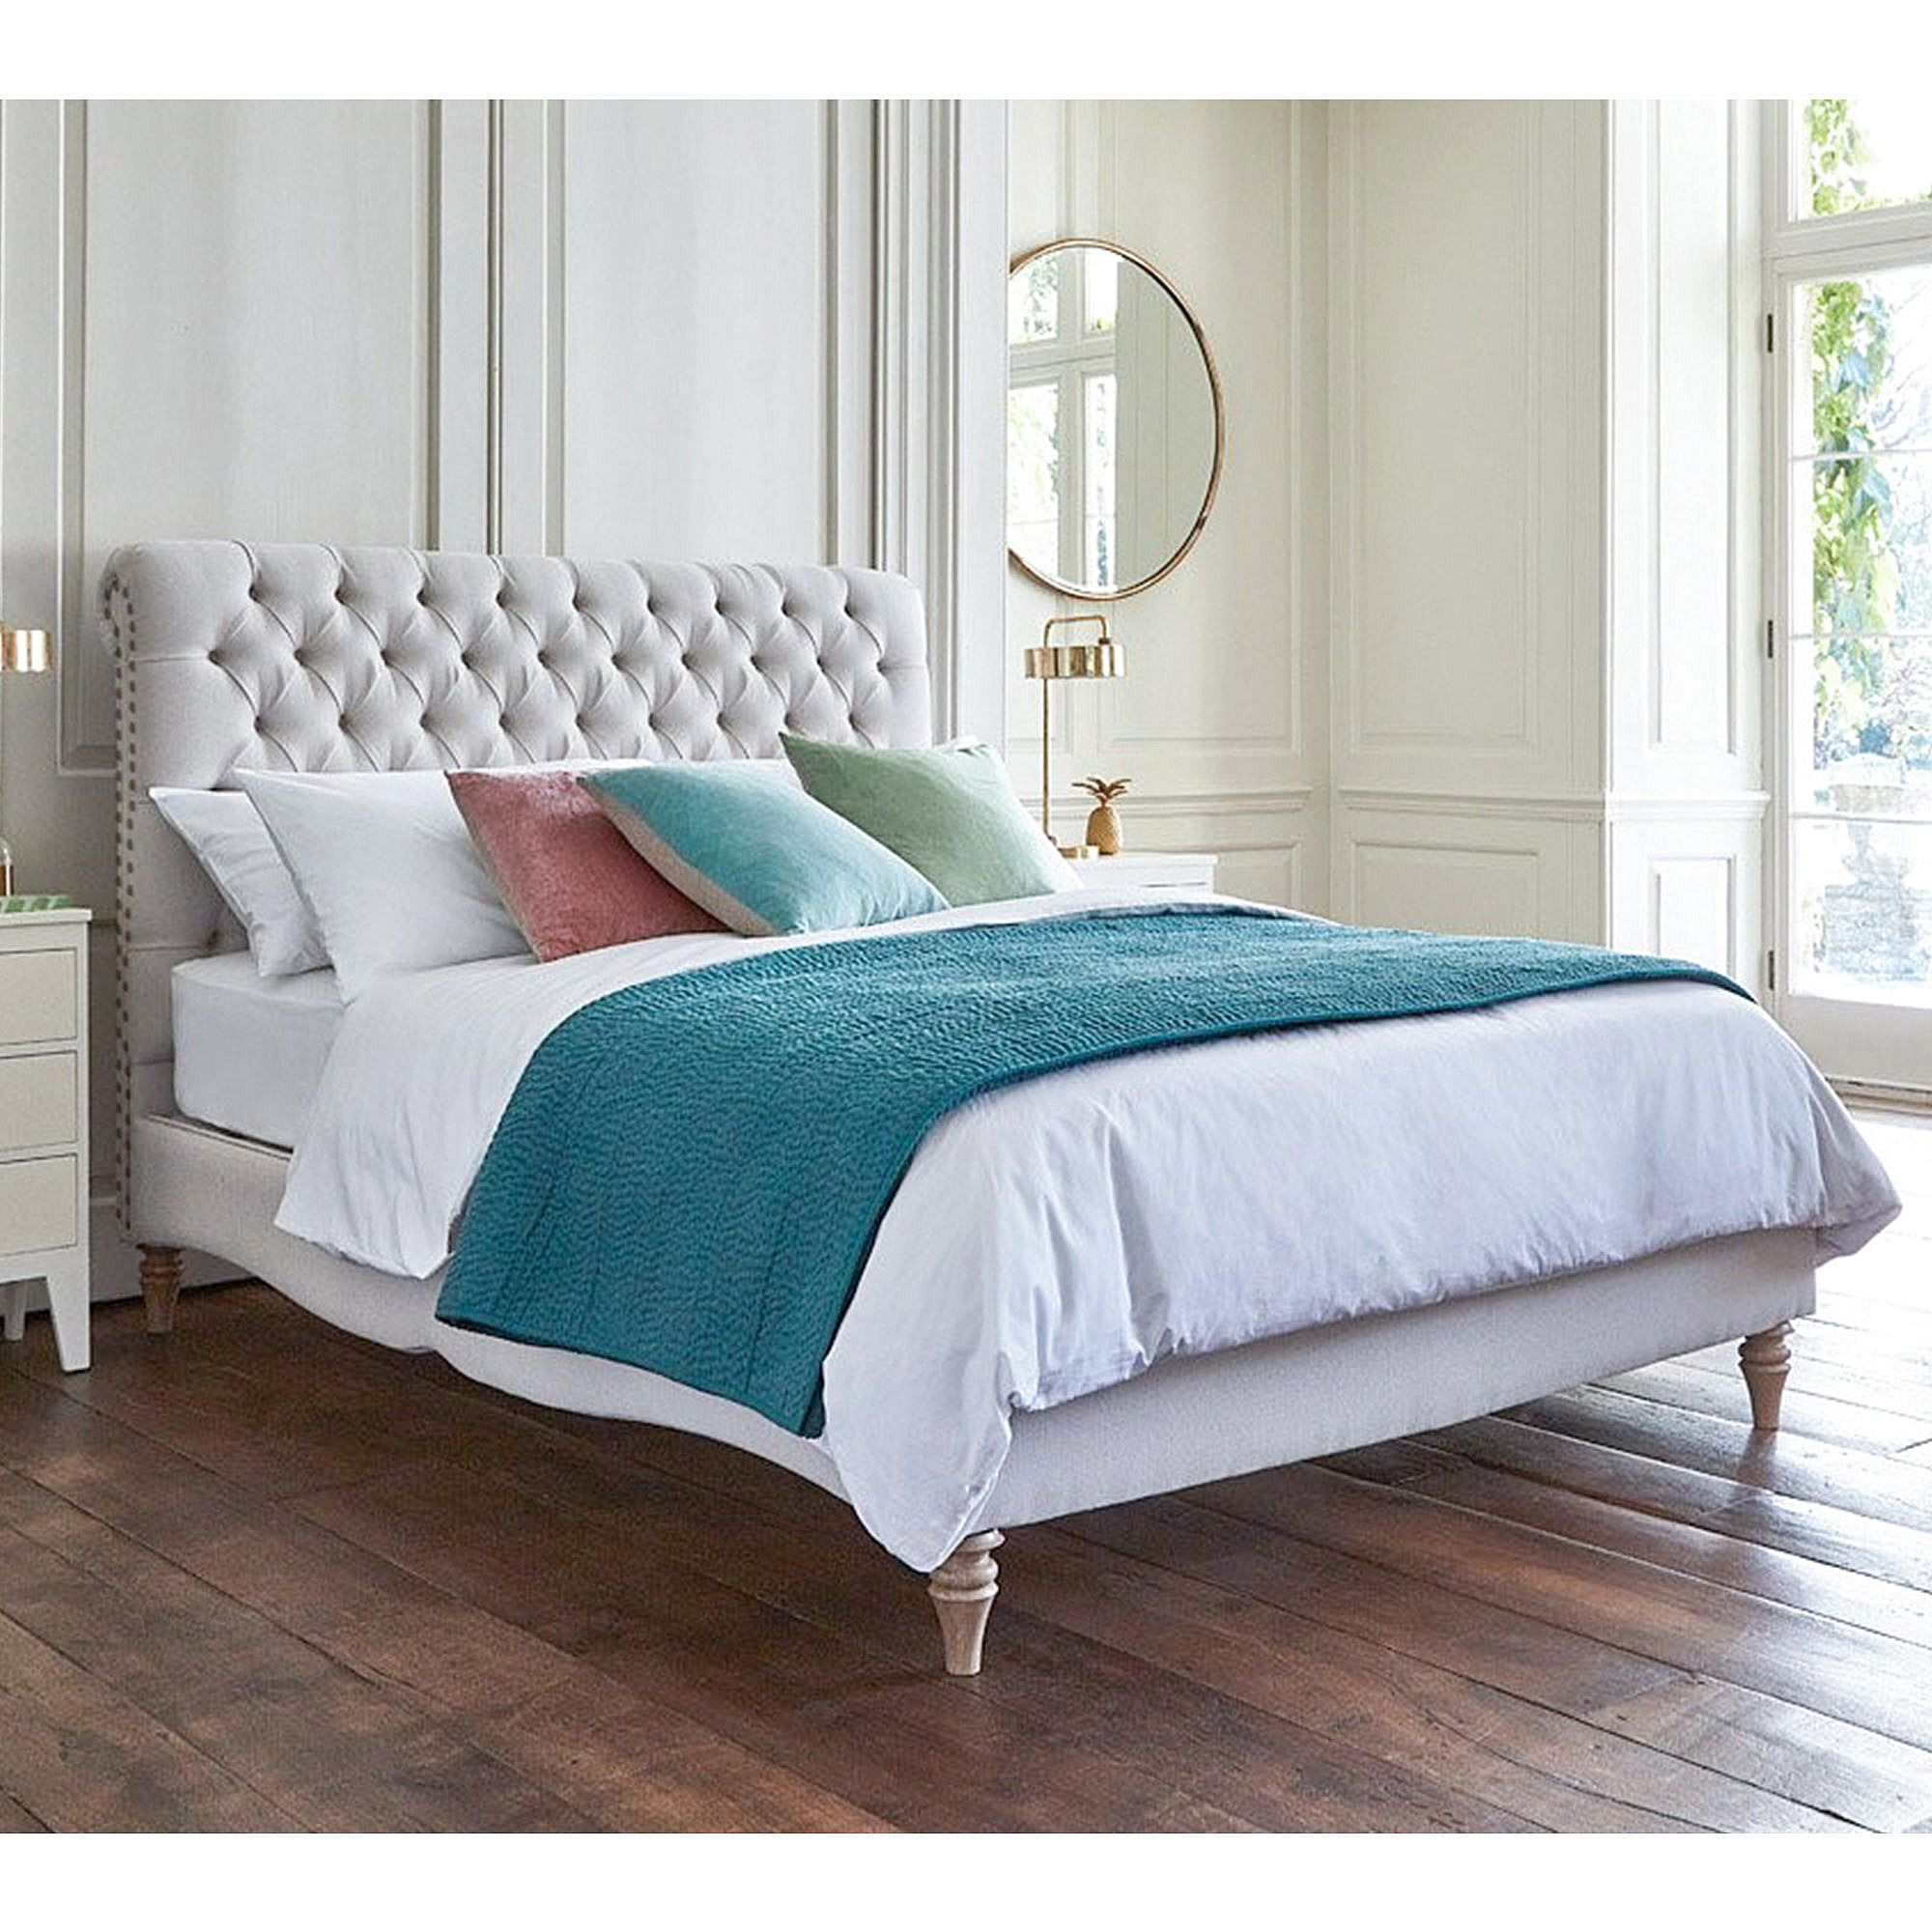 A Million Dreams Linen Upholstered Bed (Super King) - image 1